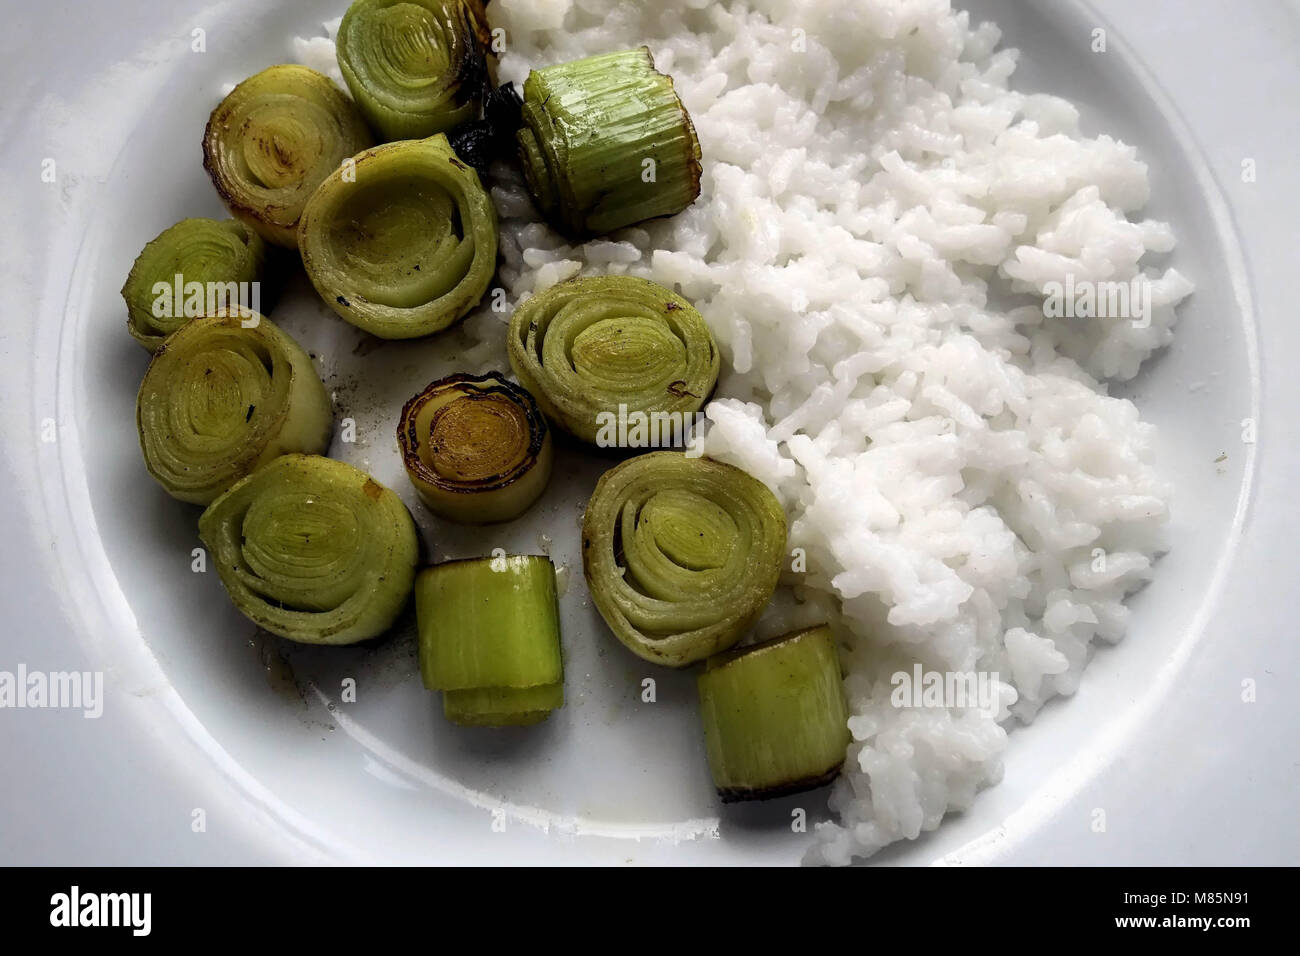 Mangiare sano - Porri imburrato con il bianco il riso a chicco lungo Foto Stock